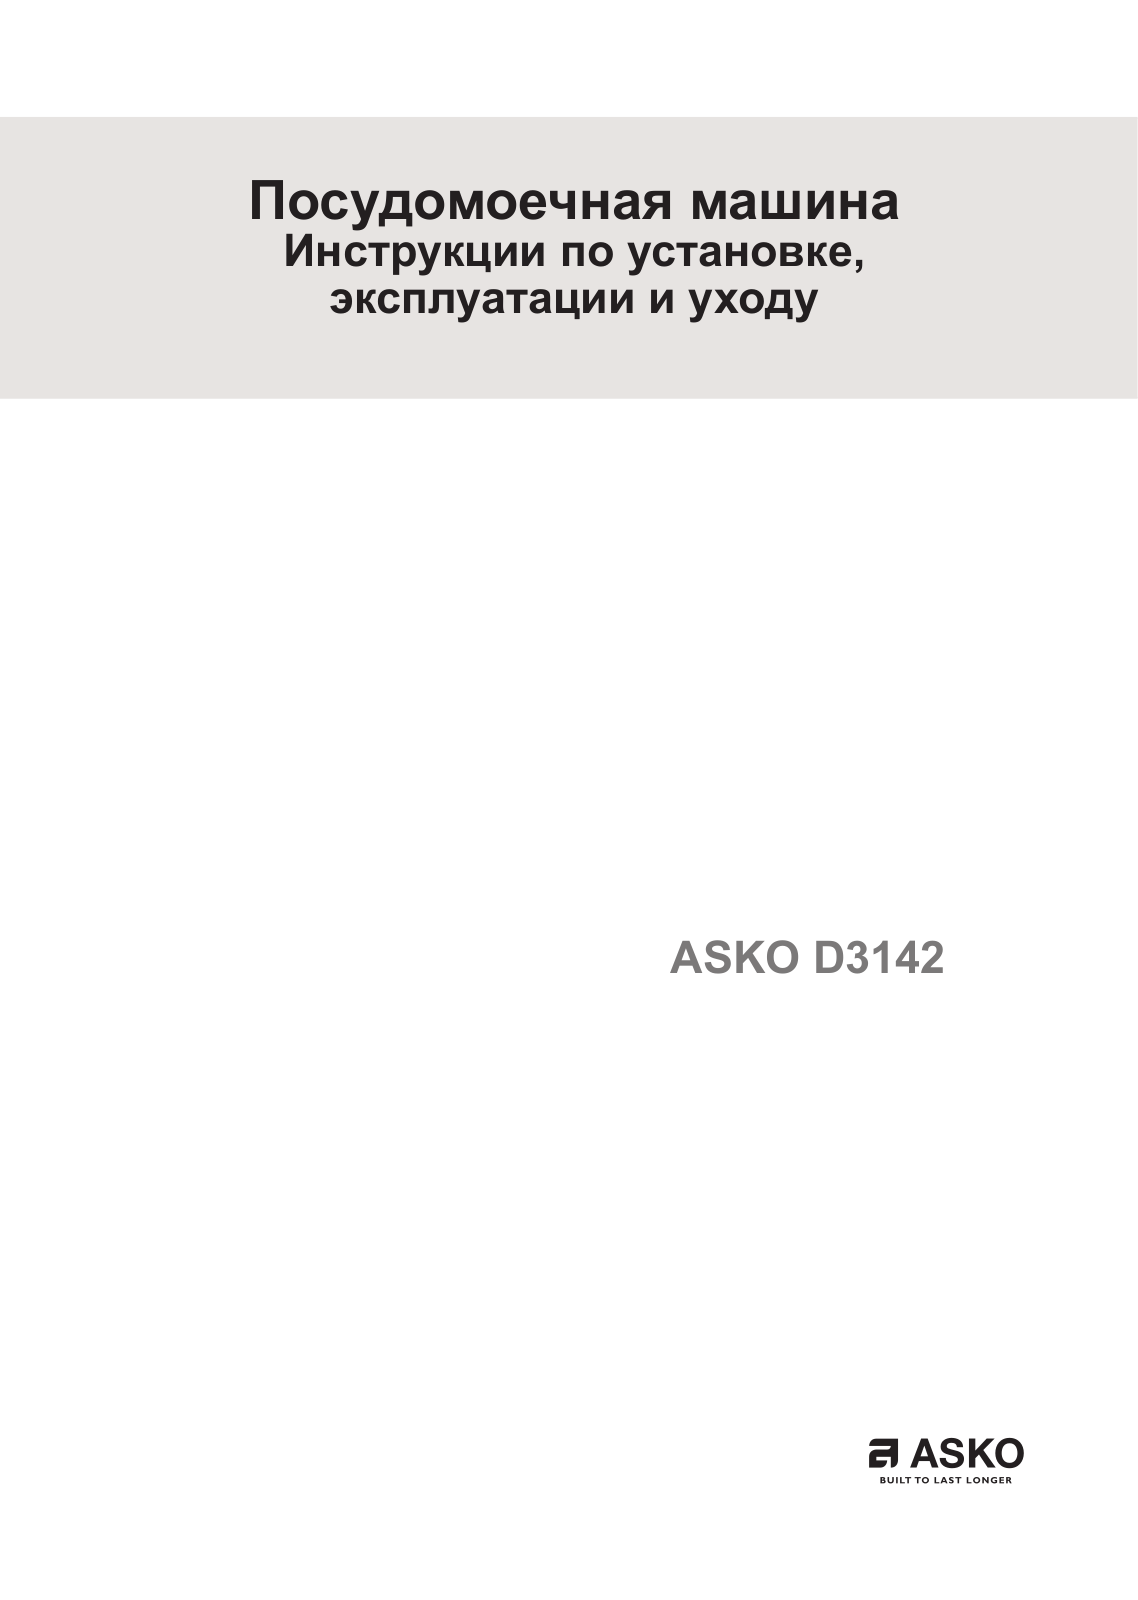 Asko D3142 User Manual